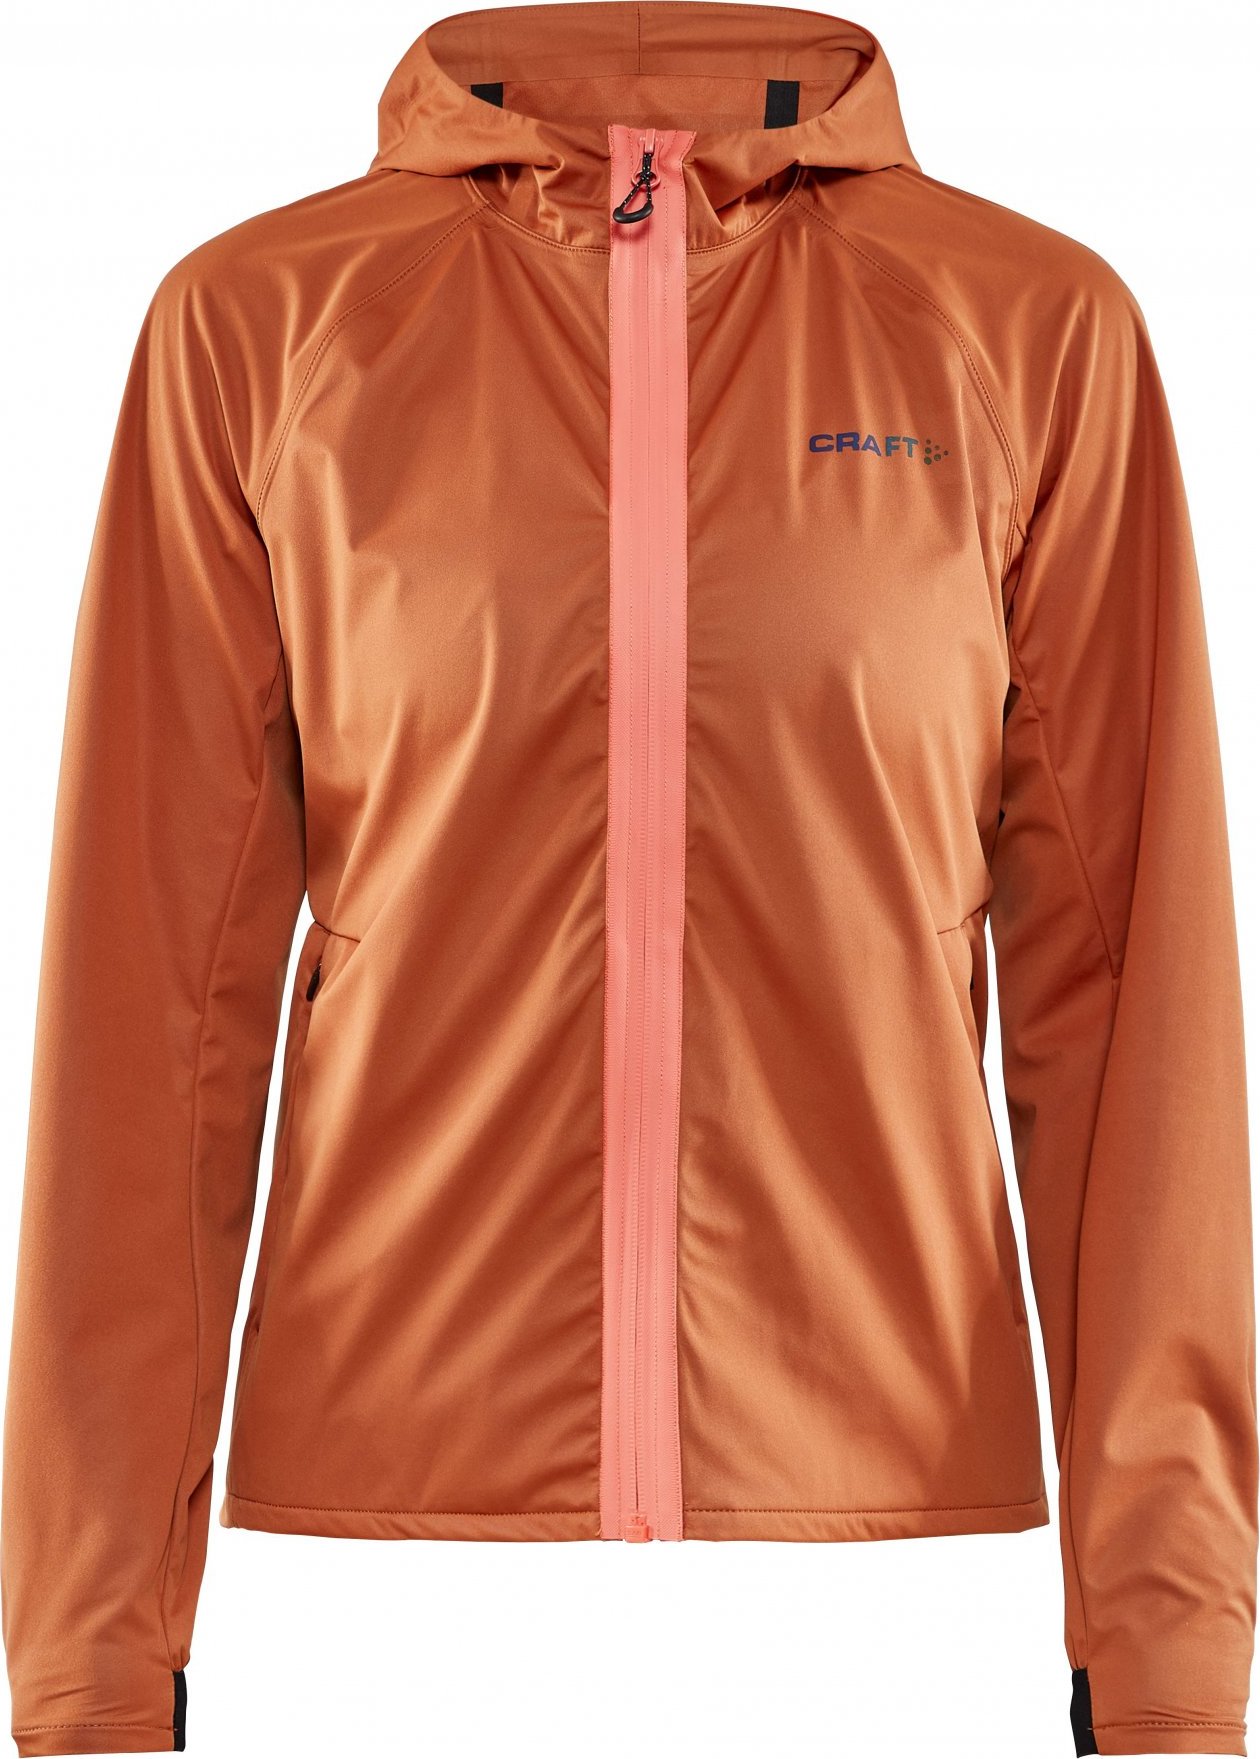 Dámská běžecká bunda CRAFT Hydro oranžová Velikost: XL